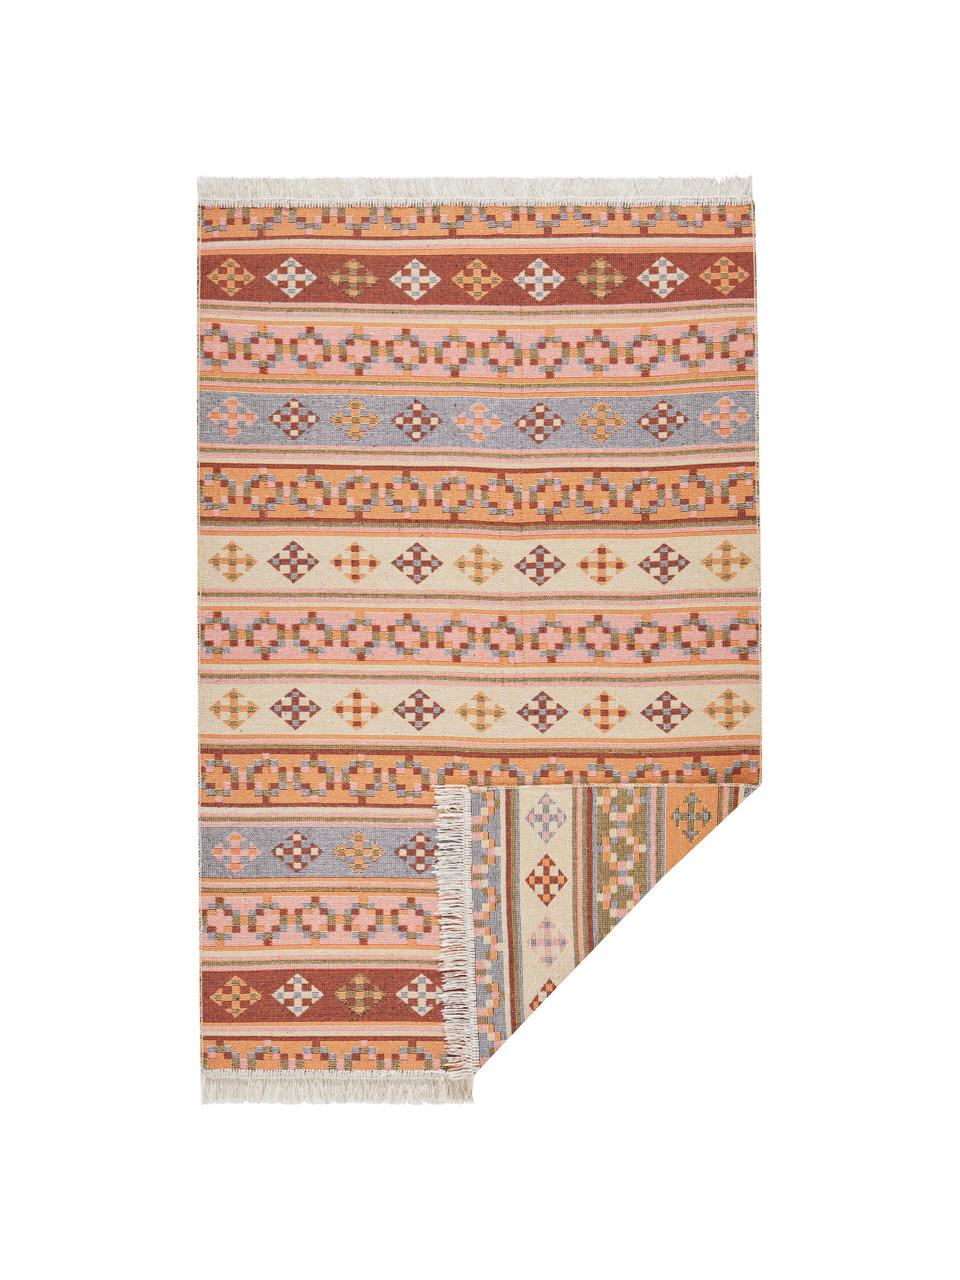 Kelimteppich Kaveri im Ethno-Style aus Baumwolle, 100% Baumwolle, Beige, Mehrfarbig, B 160 x L 220 cm (Größe M)